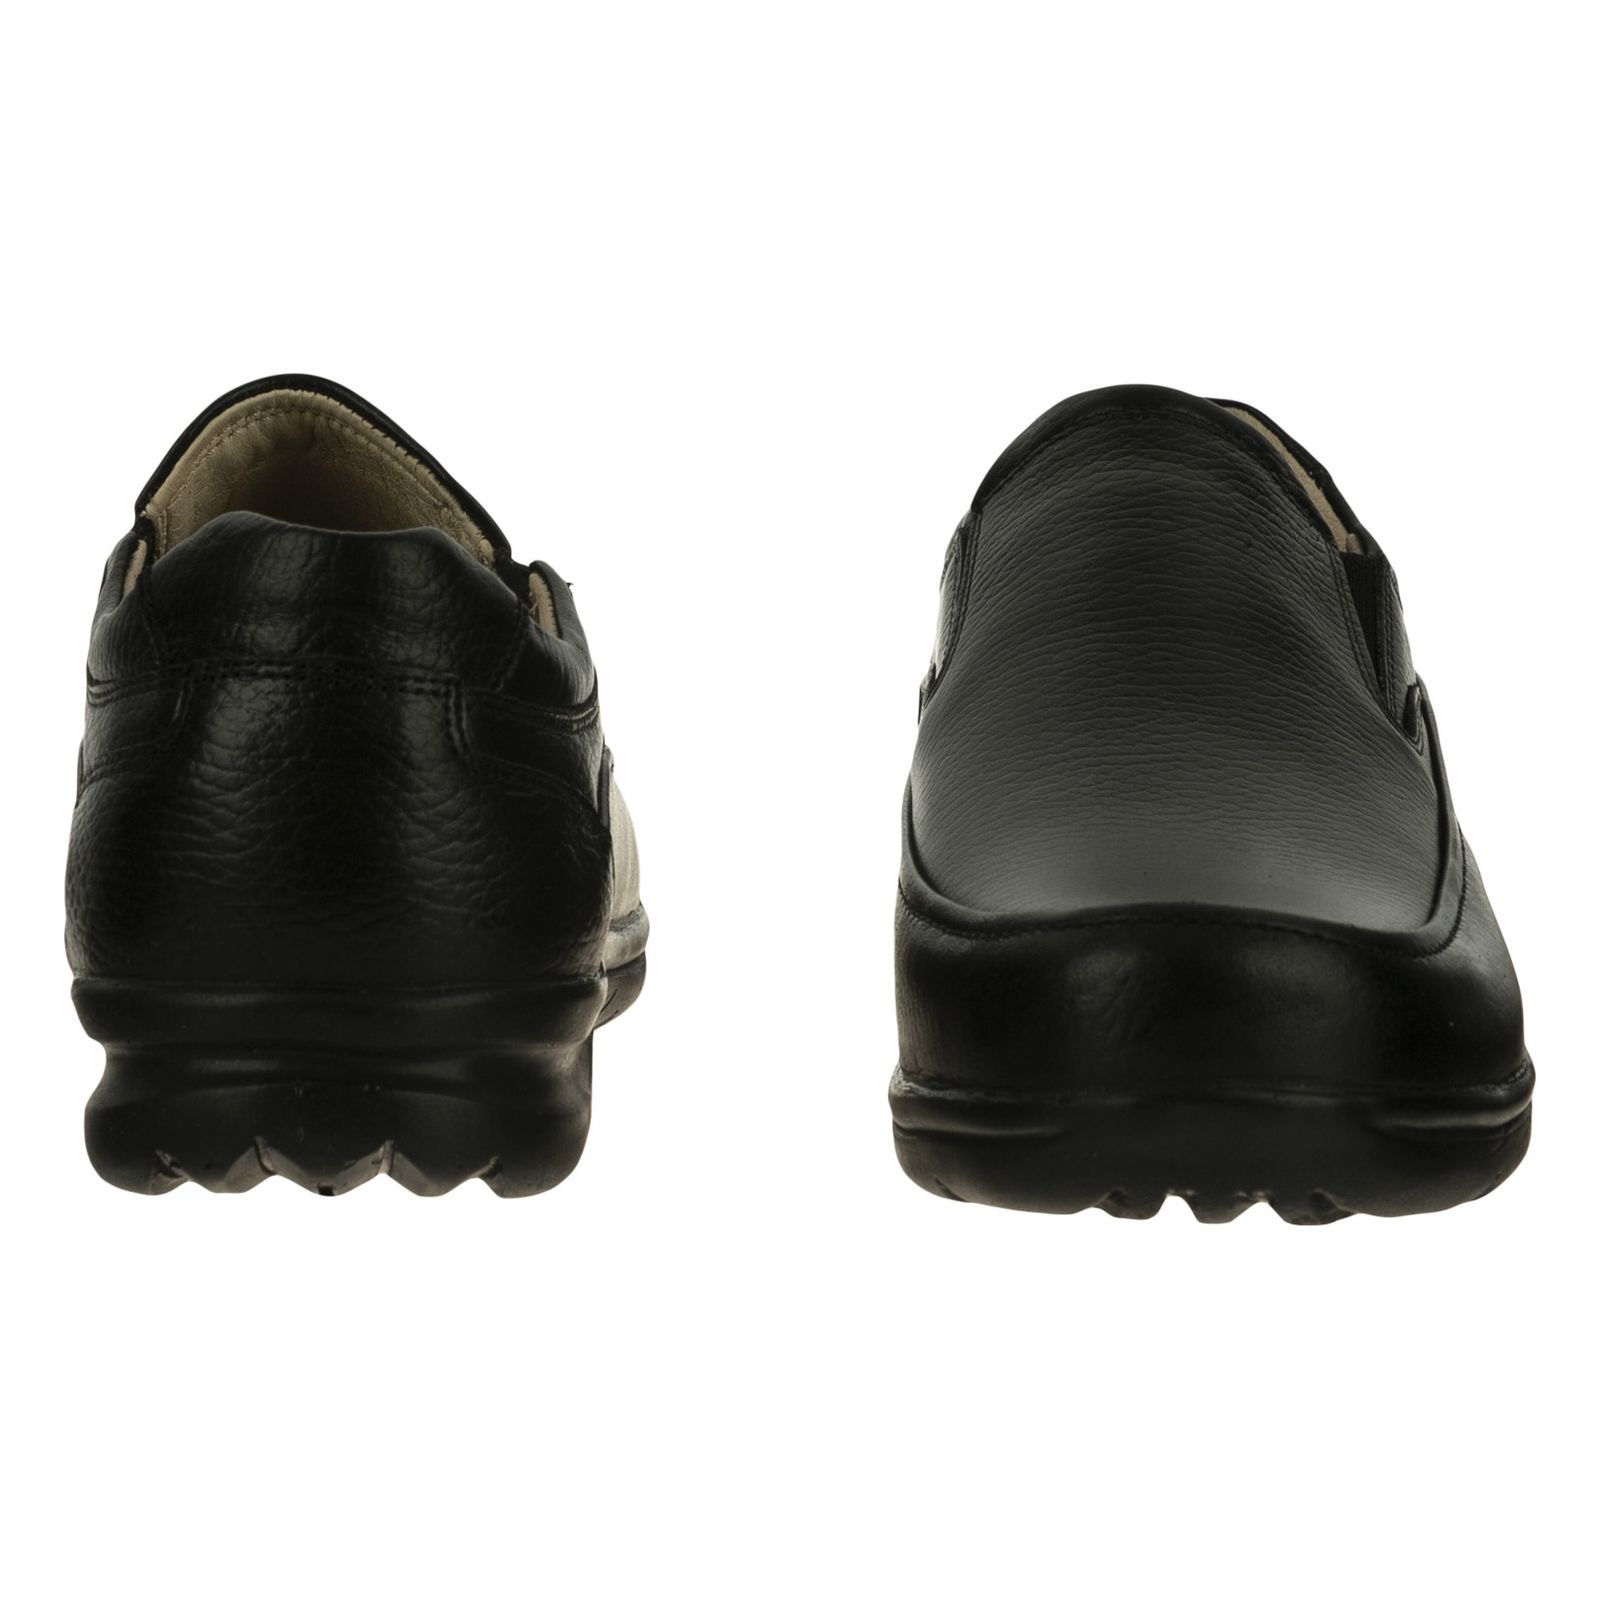 کفش روزمره مردانه دانادل مدل 7715A503101 - مشکی - 6